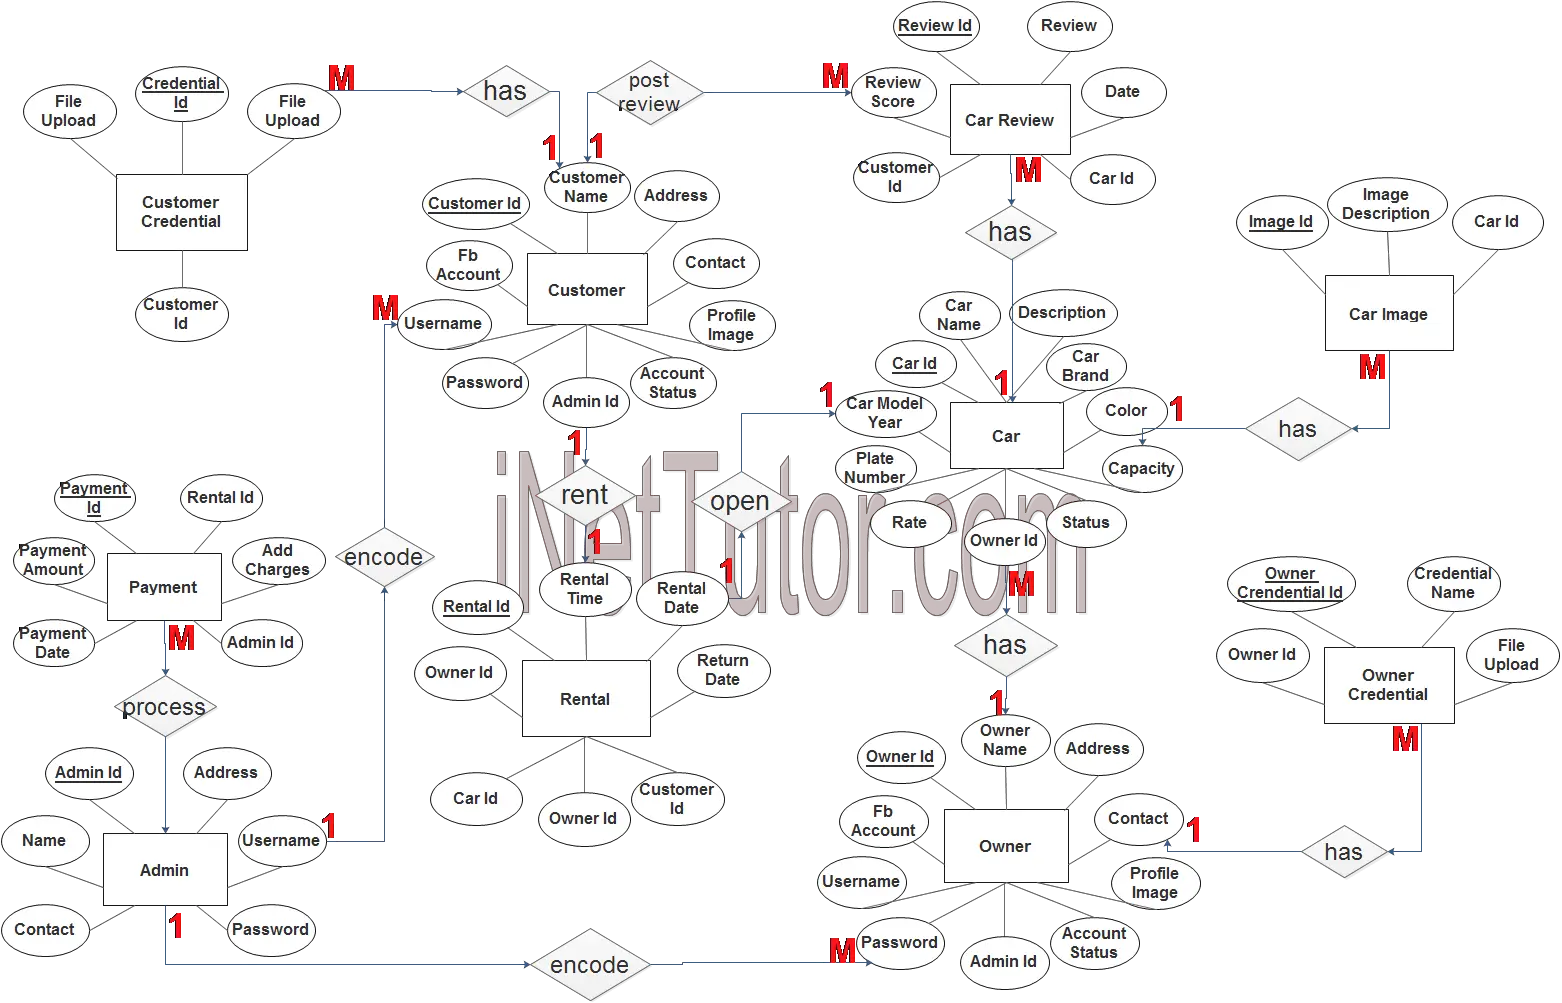 Car Rental System ER Diagram - Step 3 Complete ERD